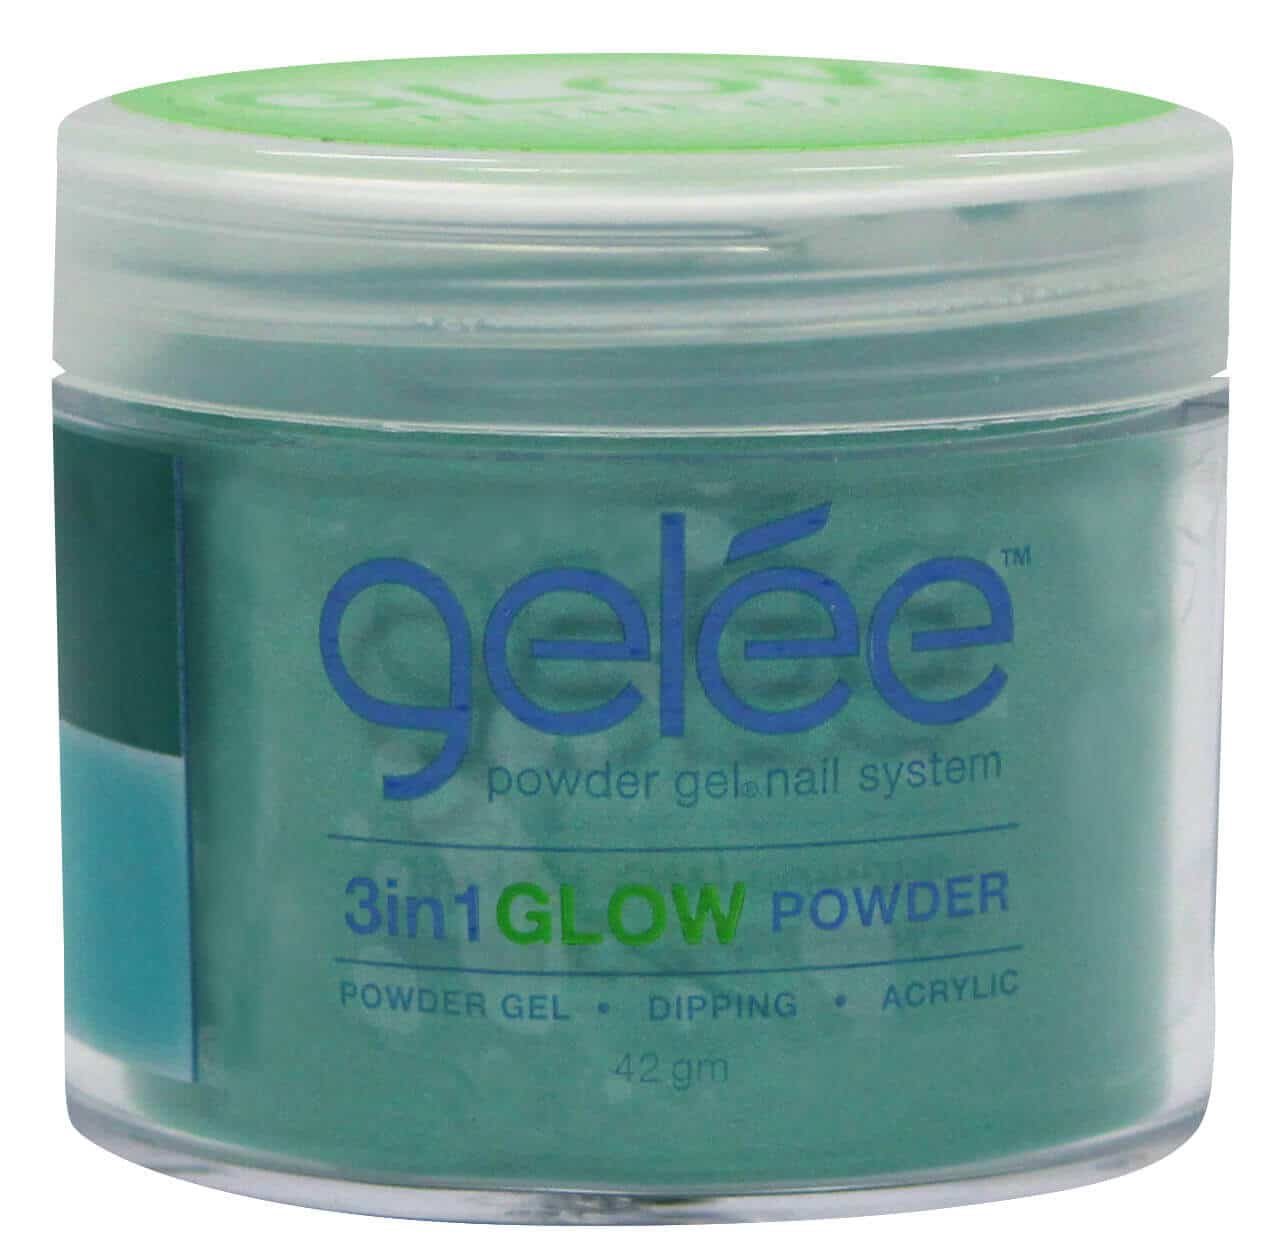 Gelee 3 in 1 Grow Powder - Freestyle 1.48 oz - #GCPG08 - Premier Nail Supply 